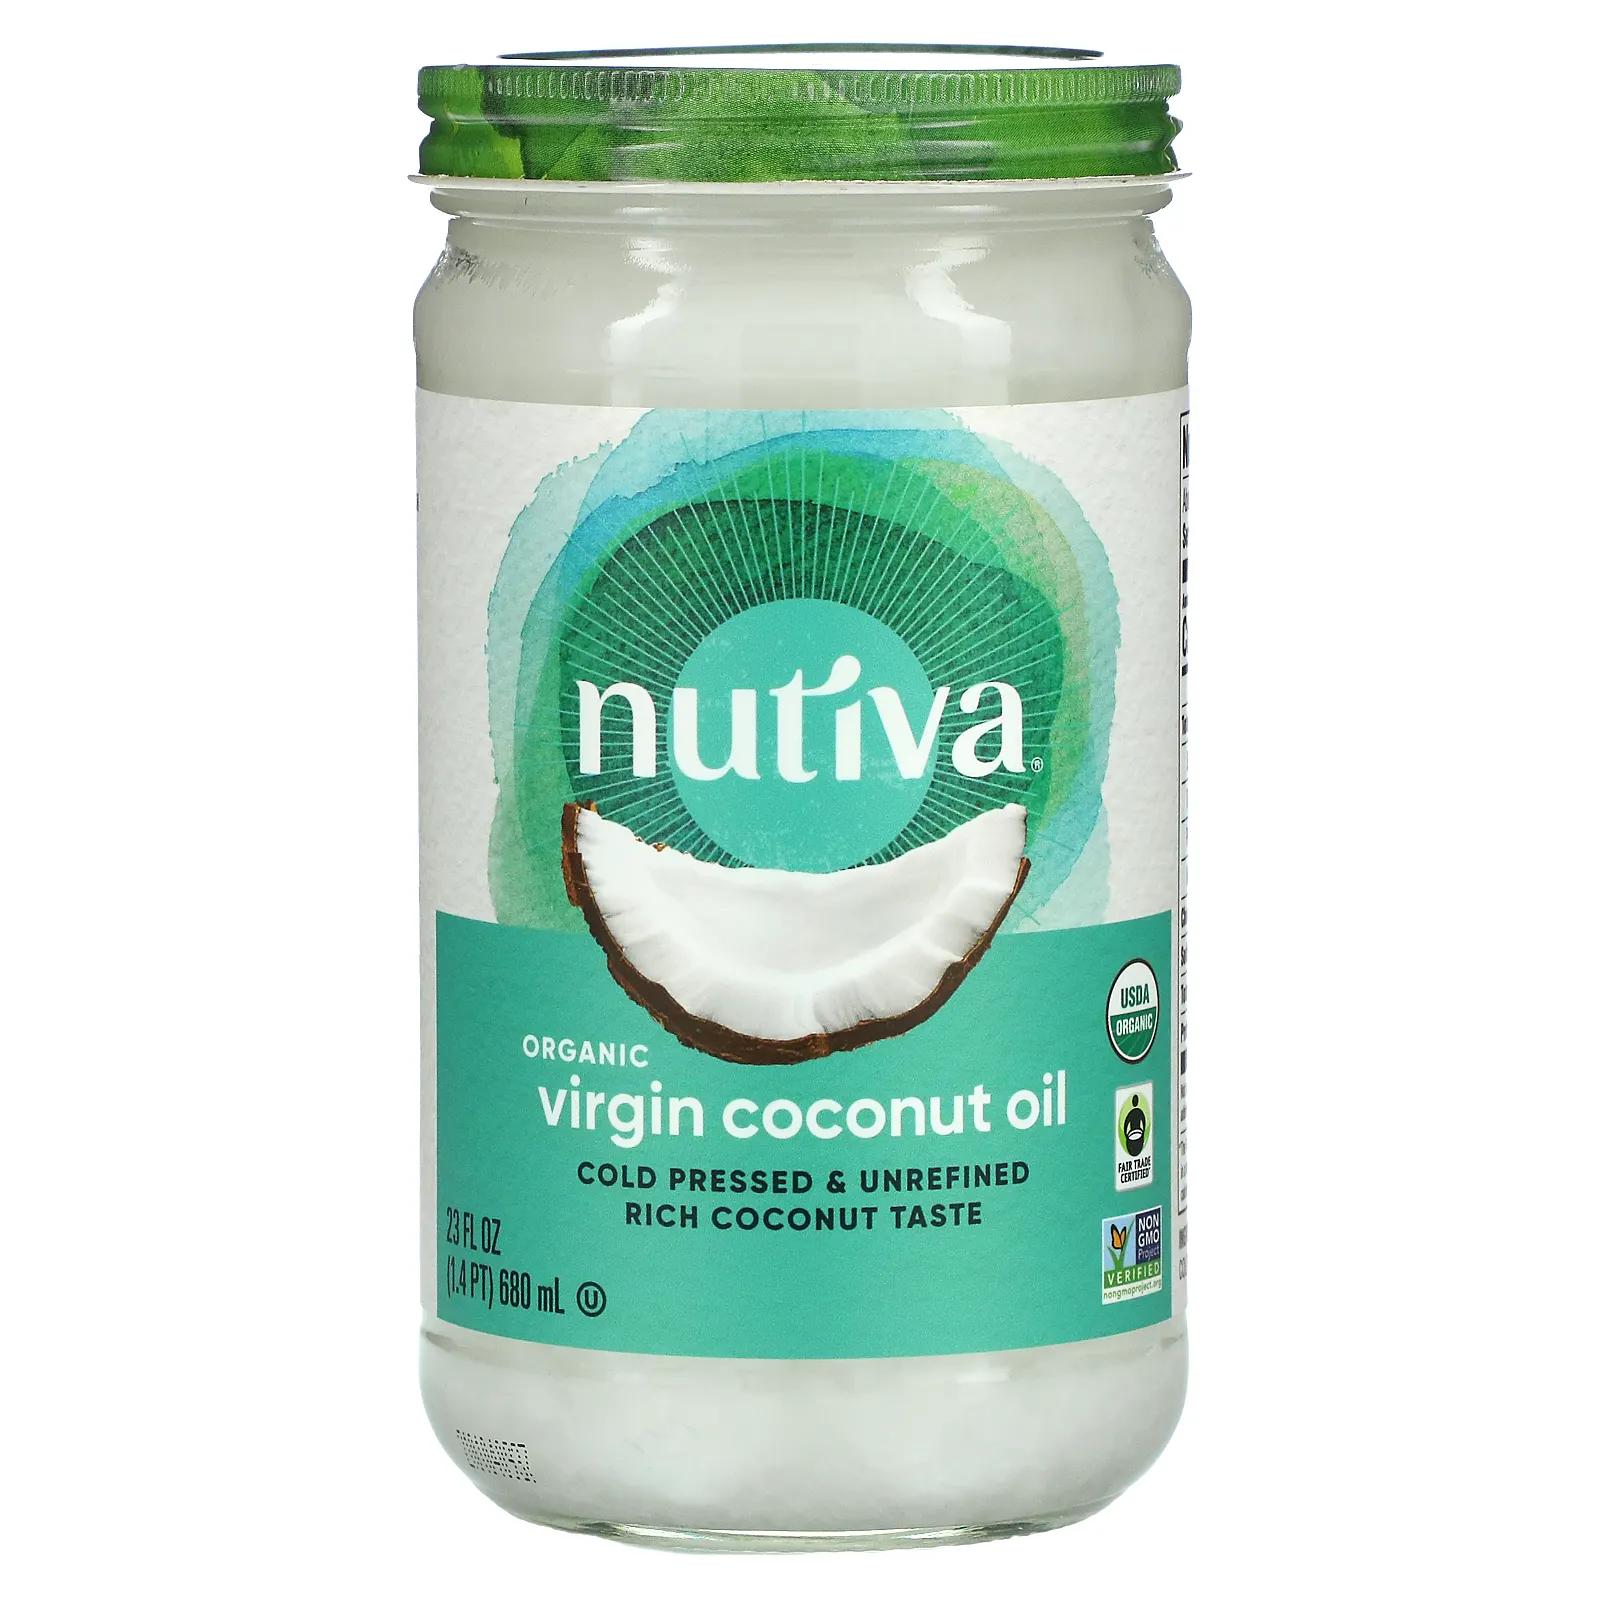 Nutiva Органическое кокосовое масло Virgin 23 жидкие унции (680 мл) nutiva органическое кокосовое масло virgin 23 жидкие унции 680 мл